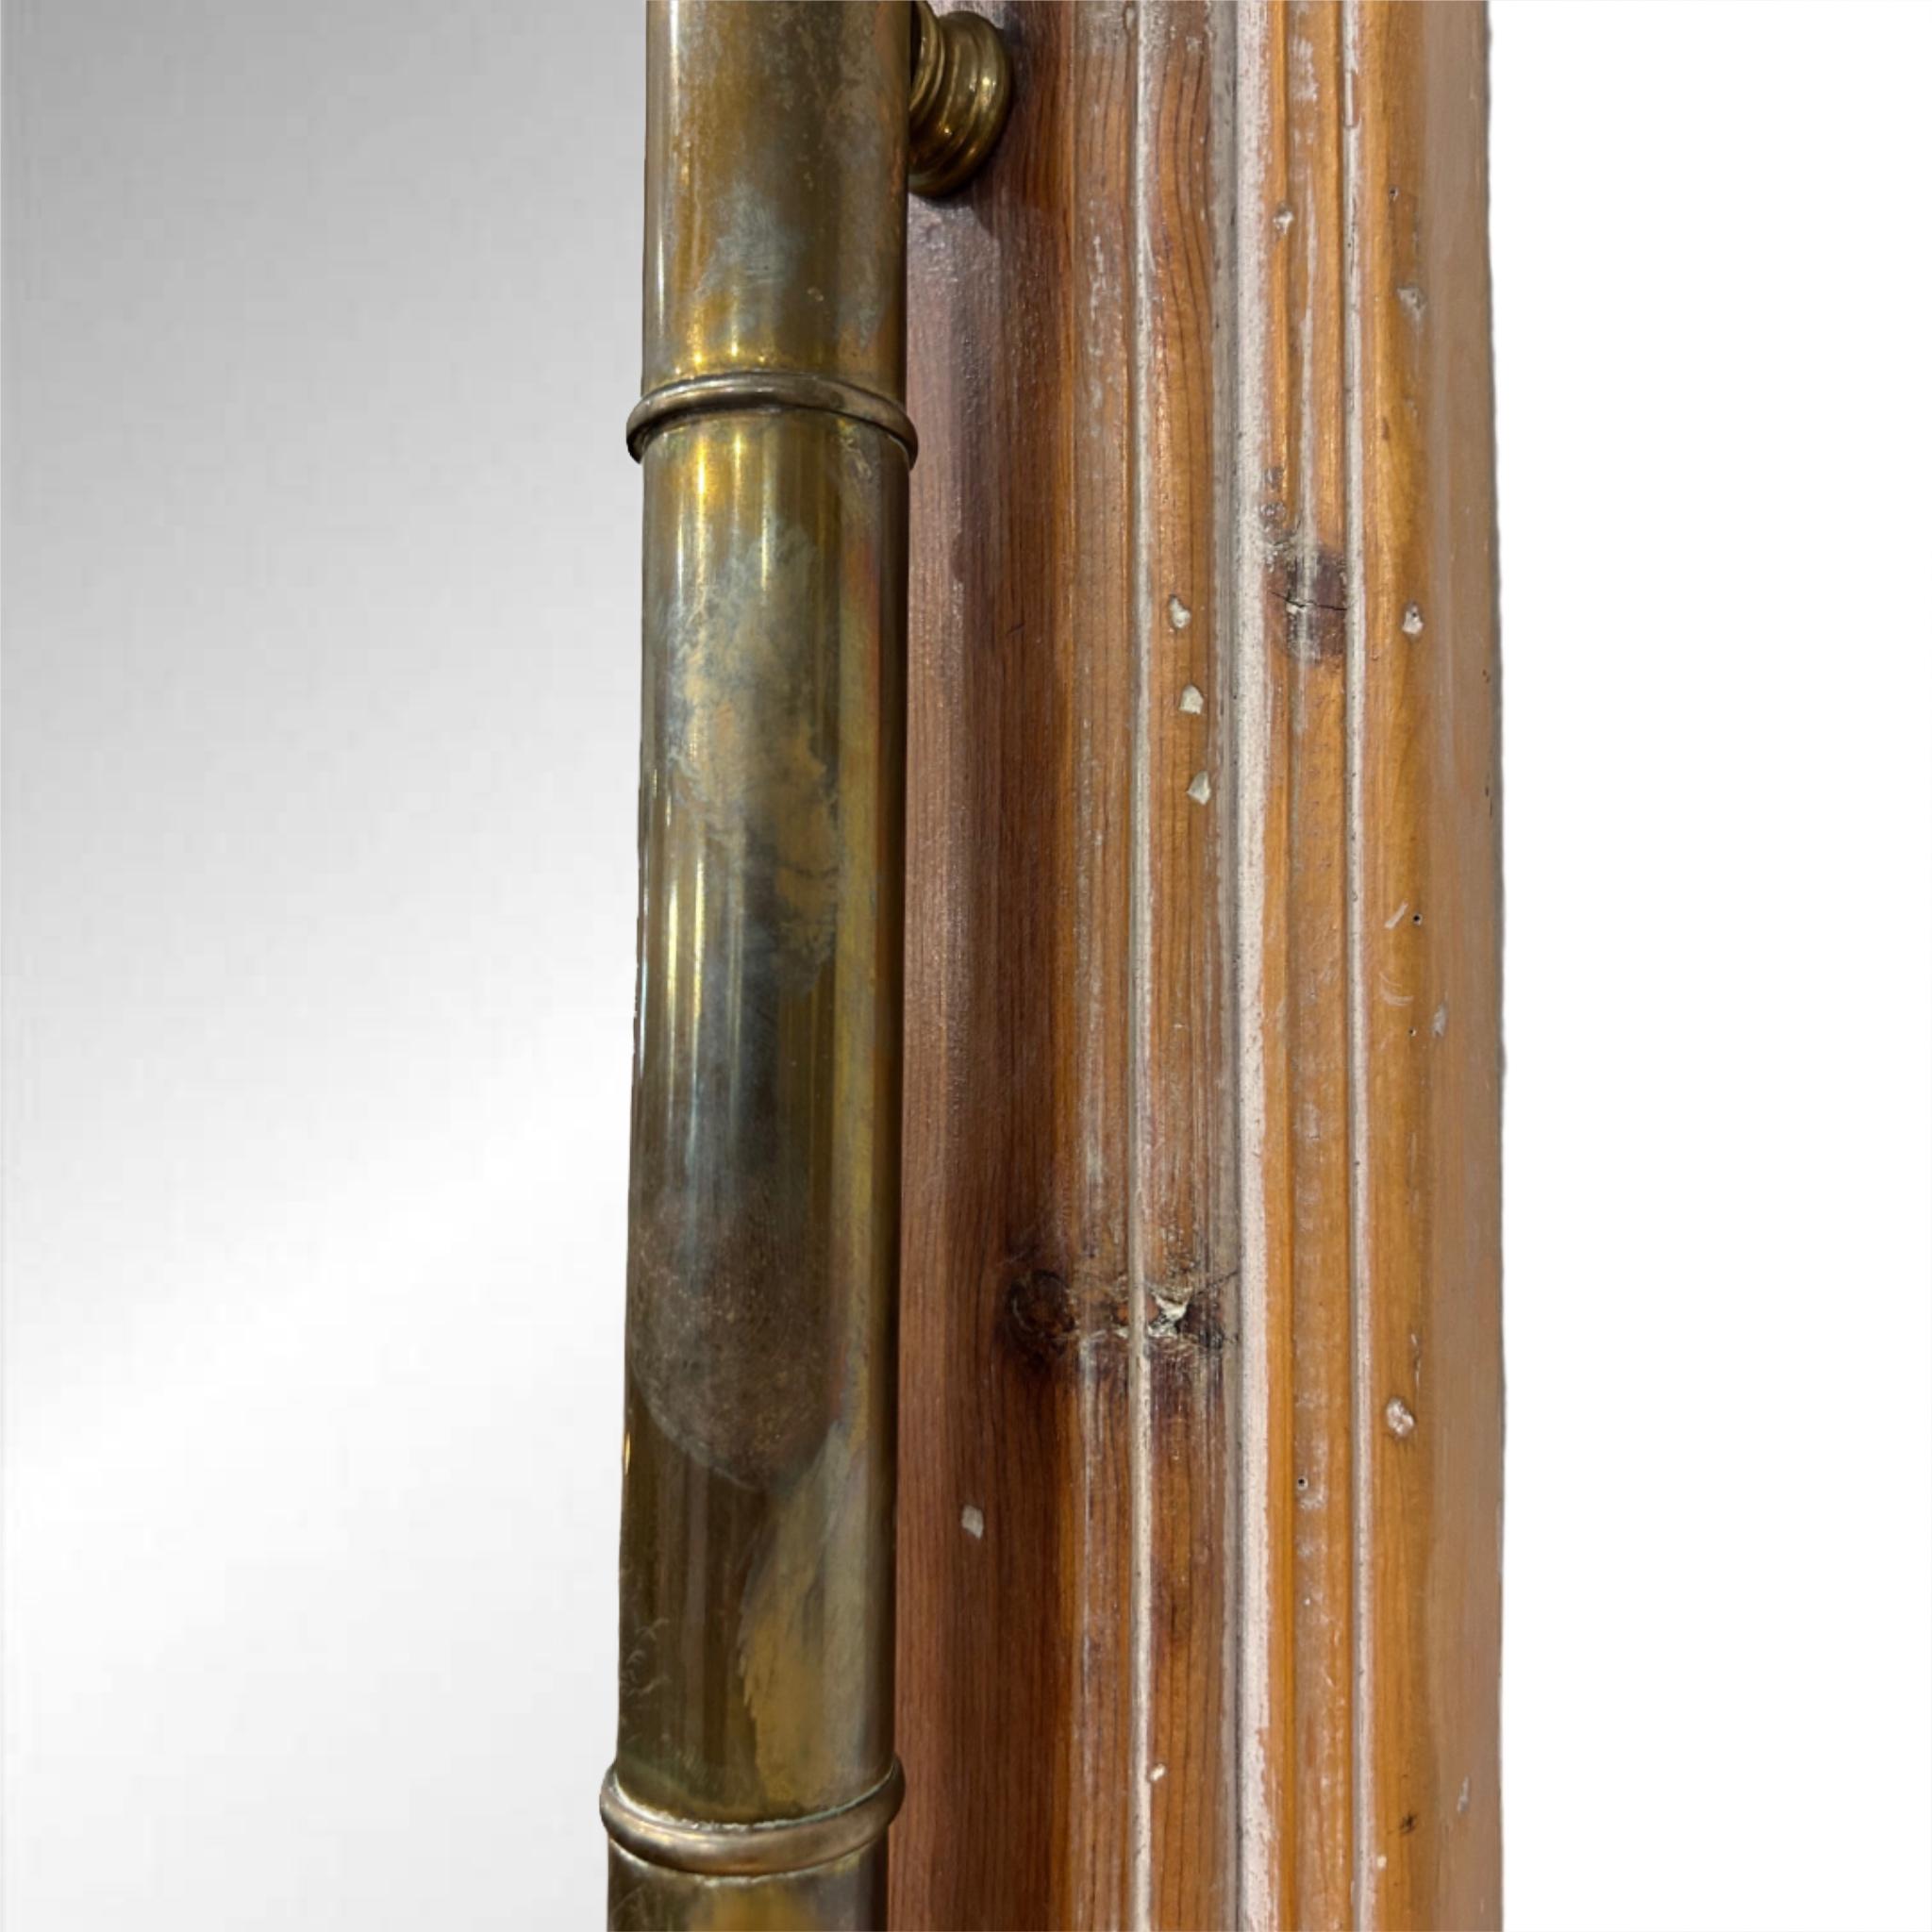 Miroir vintage en bois et laiton 

Cadre en bois avec baguettes en laiton 

Patine naturelle sur laiton

Fil de fer au dos pour la suspension
